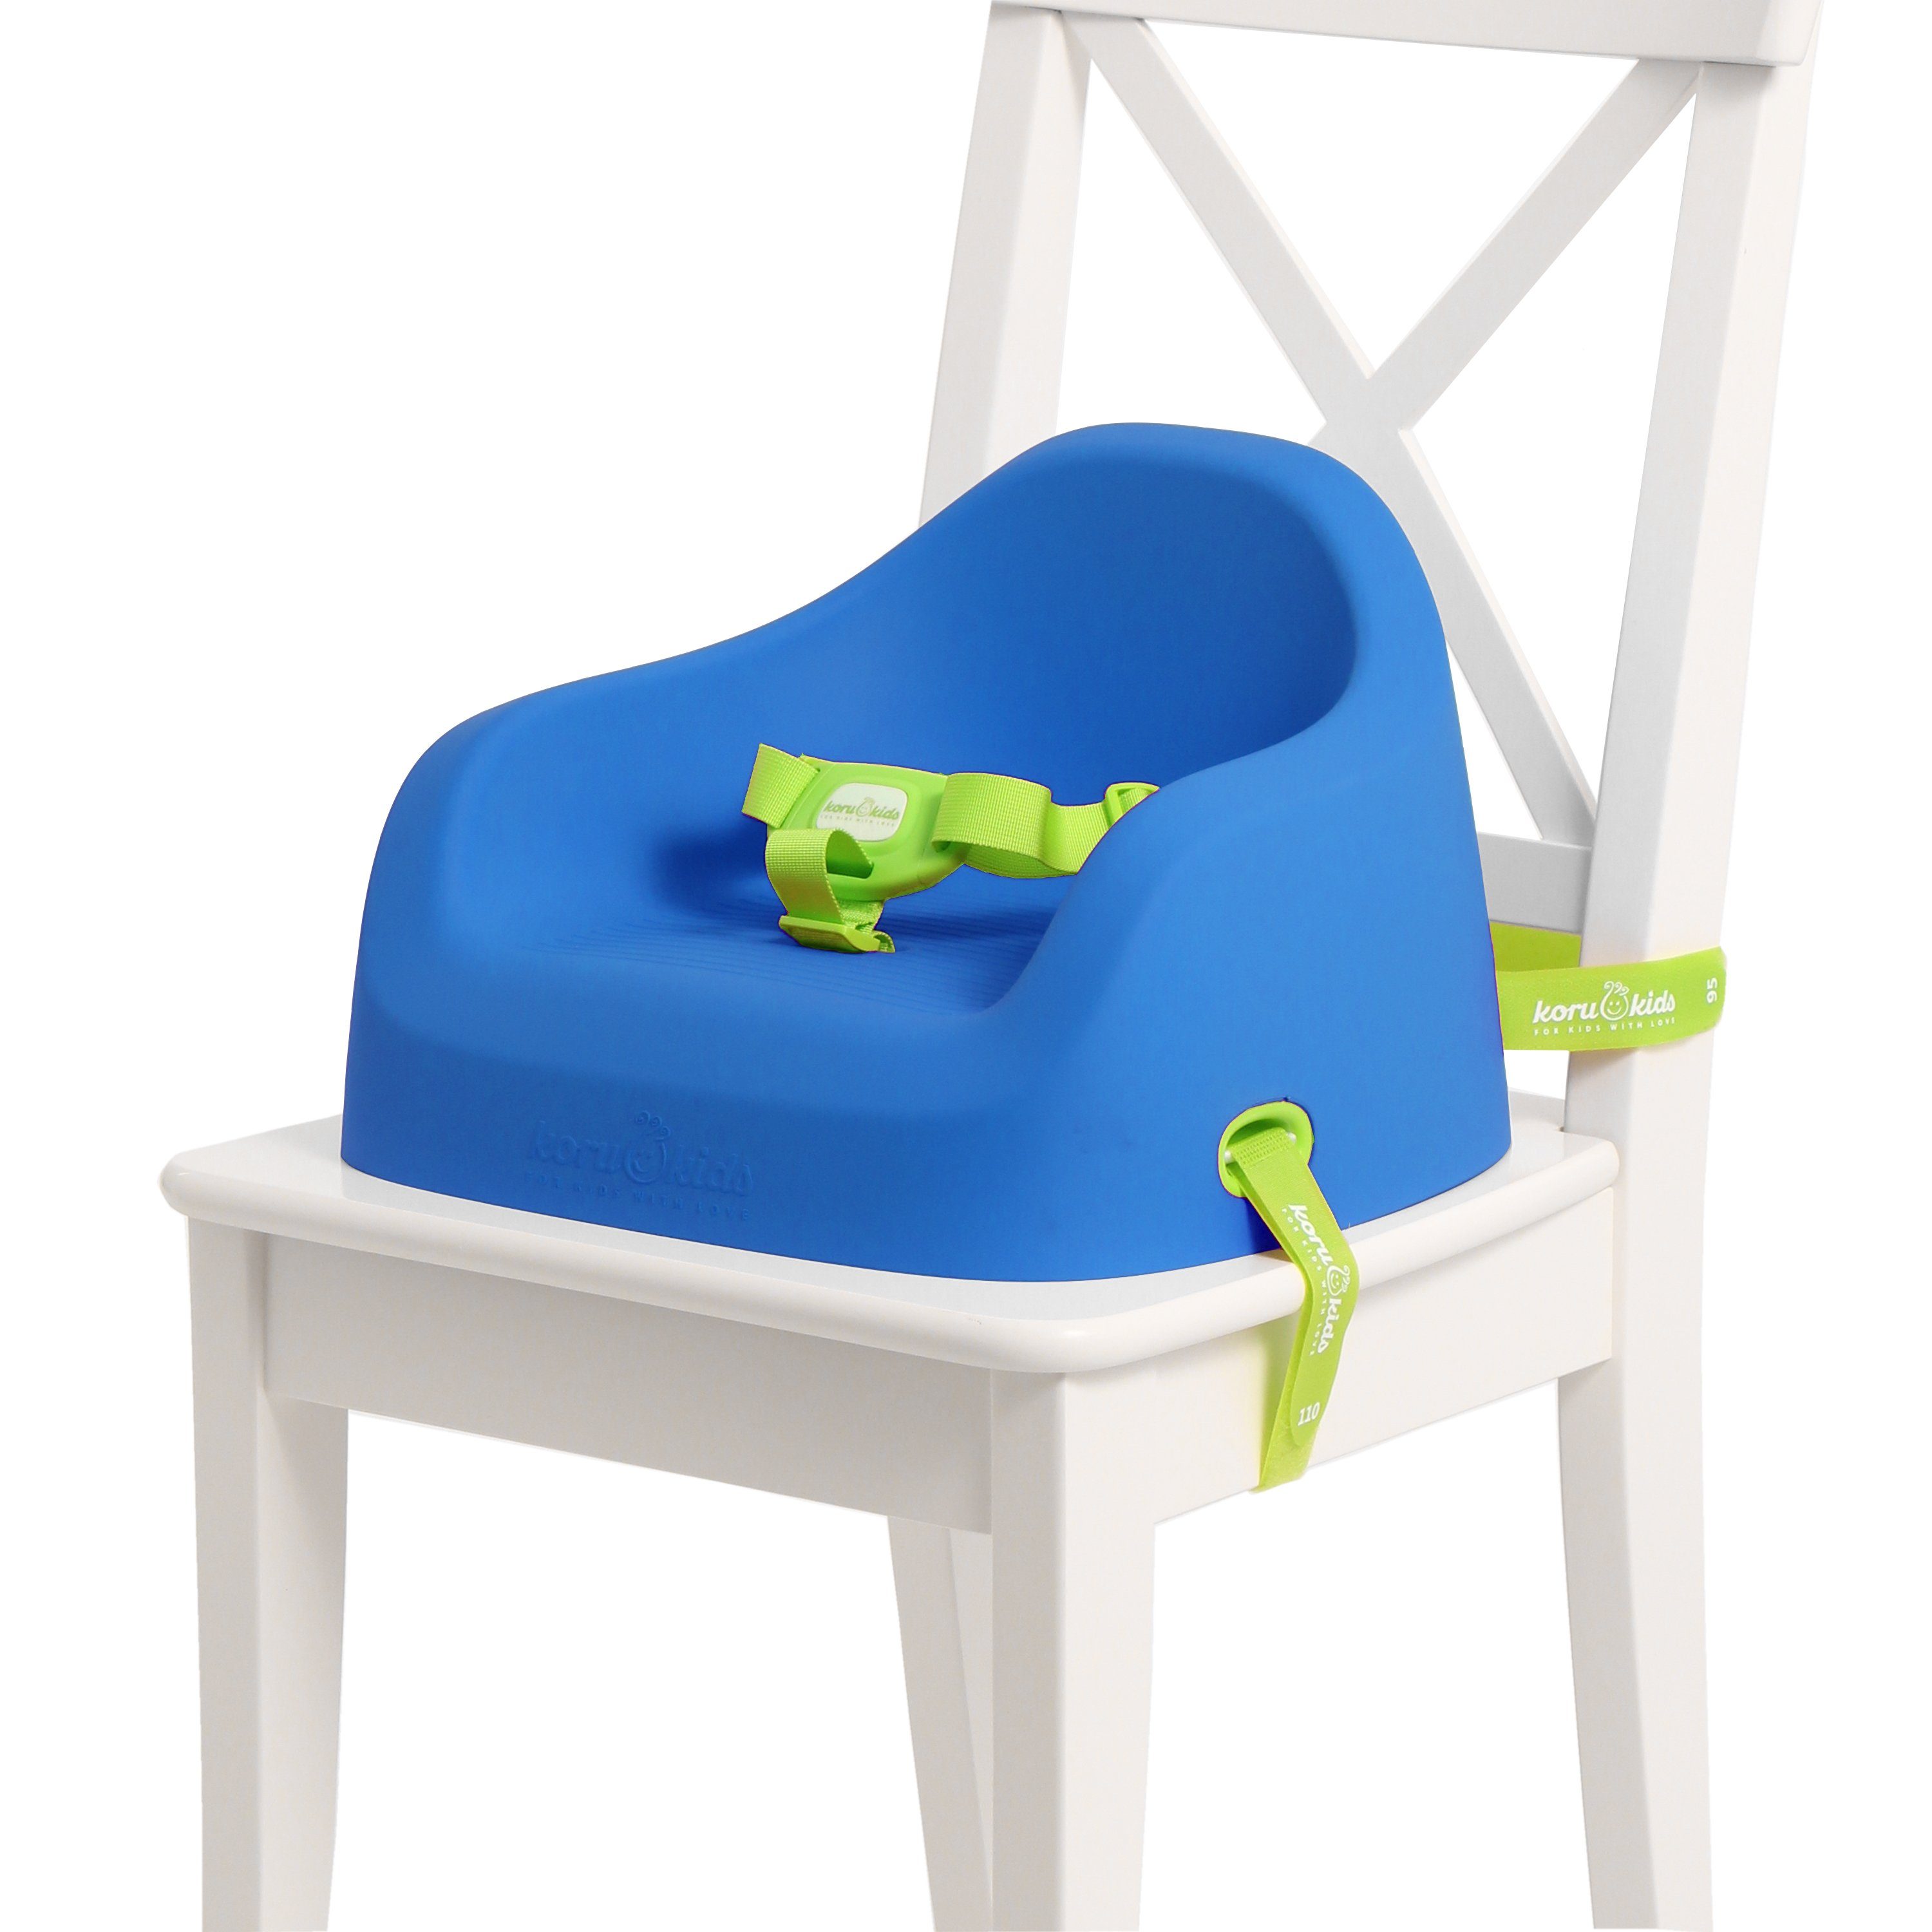 Koru Kids Kindersitzerhöhung Toddler Booster, ab: 12 Monate, bis: 7 Jahre plus, bis: 40,00 kg, Leicht am Stuhl zu fixieren, leicht zu reinigen, stapelbar, robust Ocean Blue